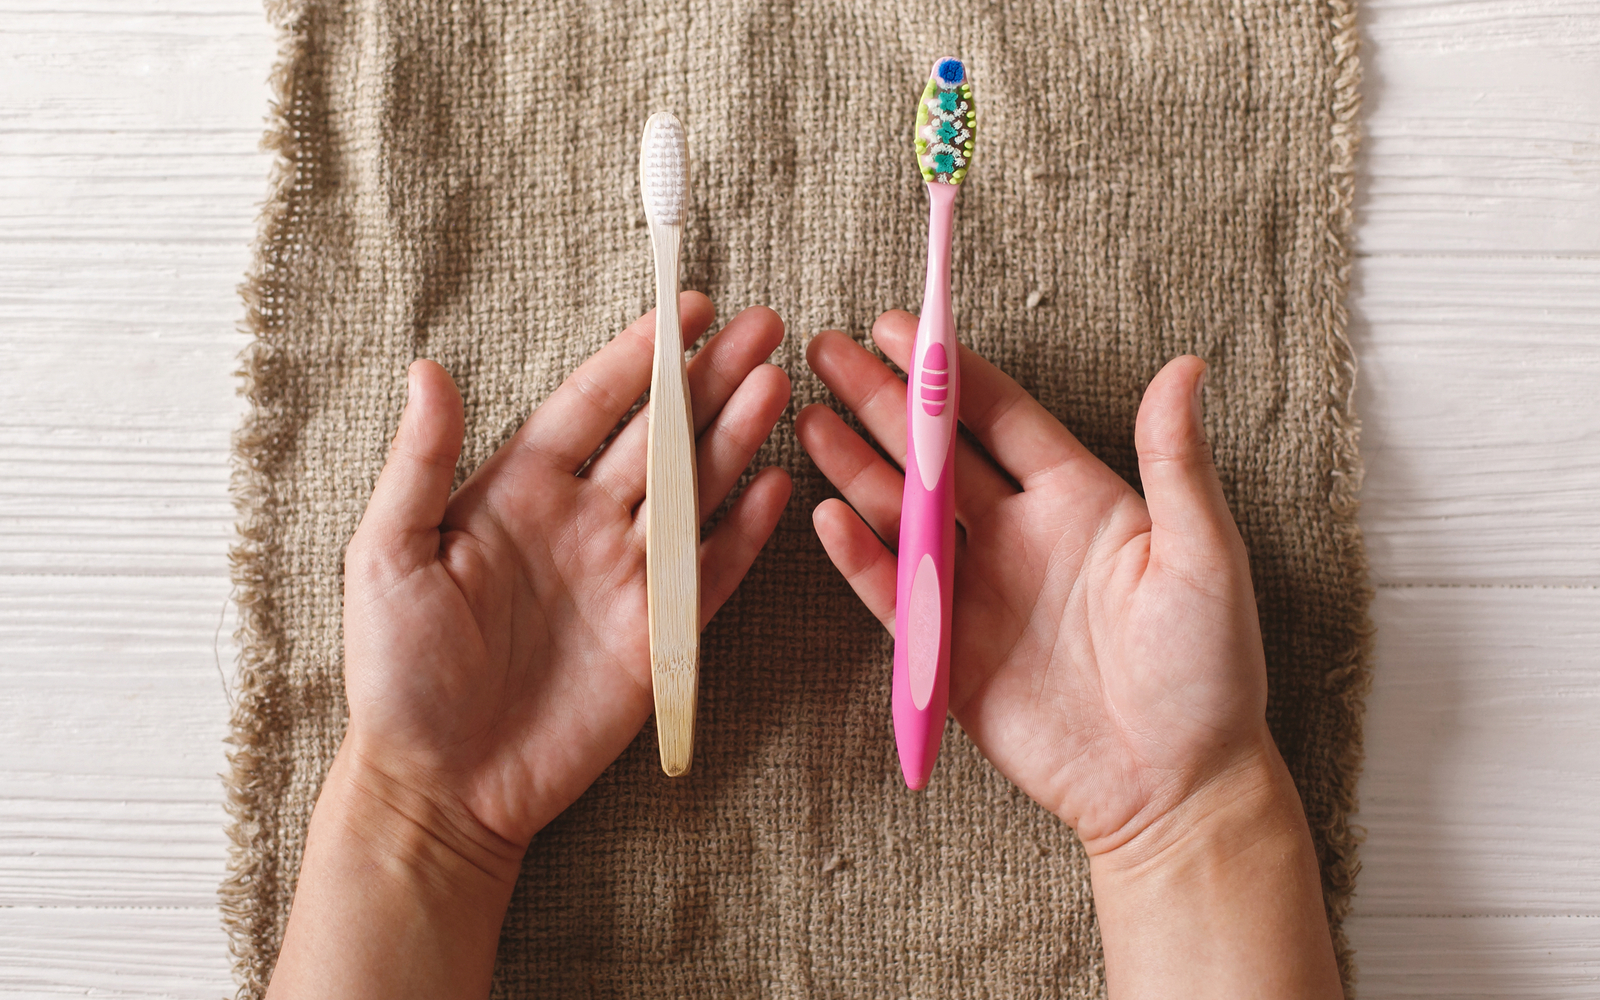 Plastic vs Wooden Toothbrush